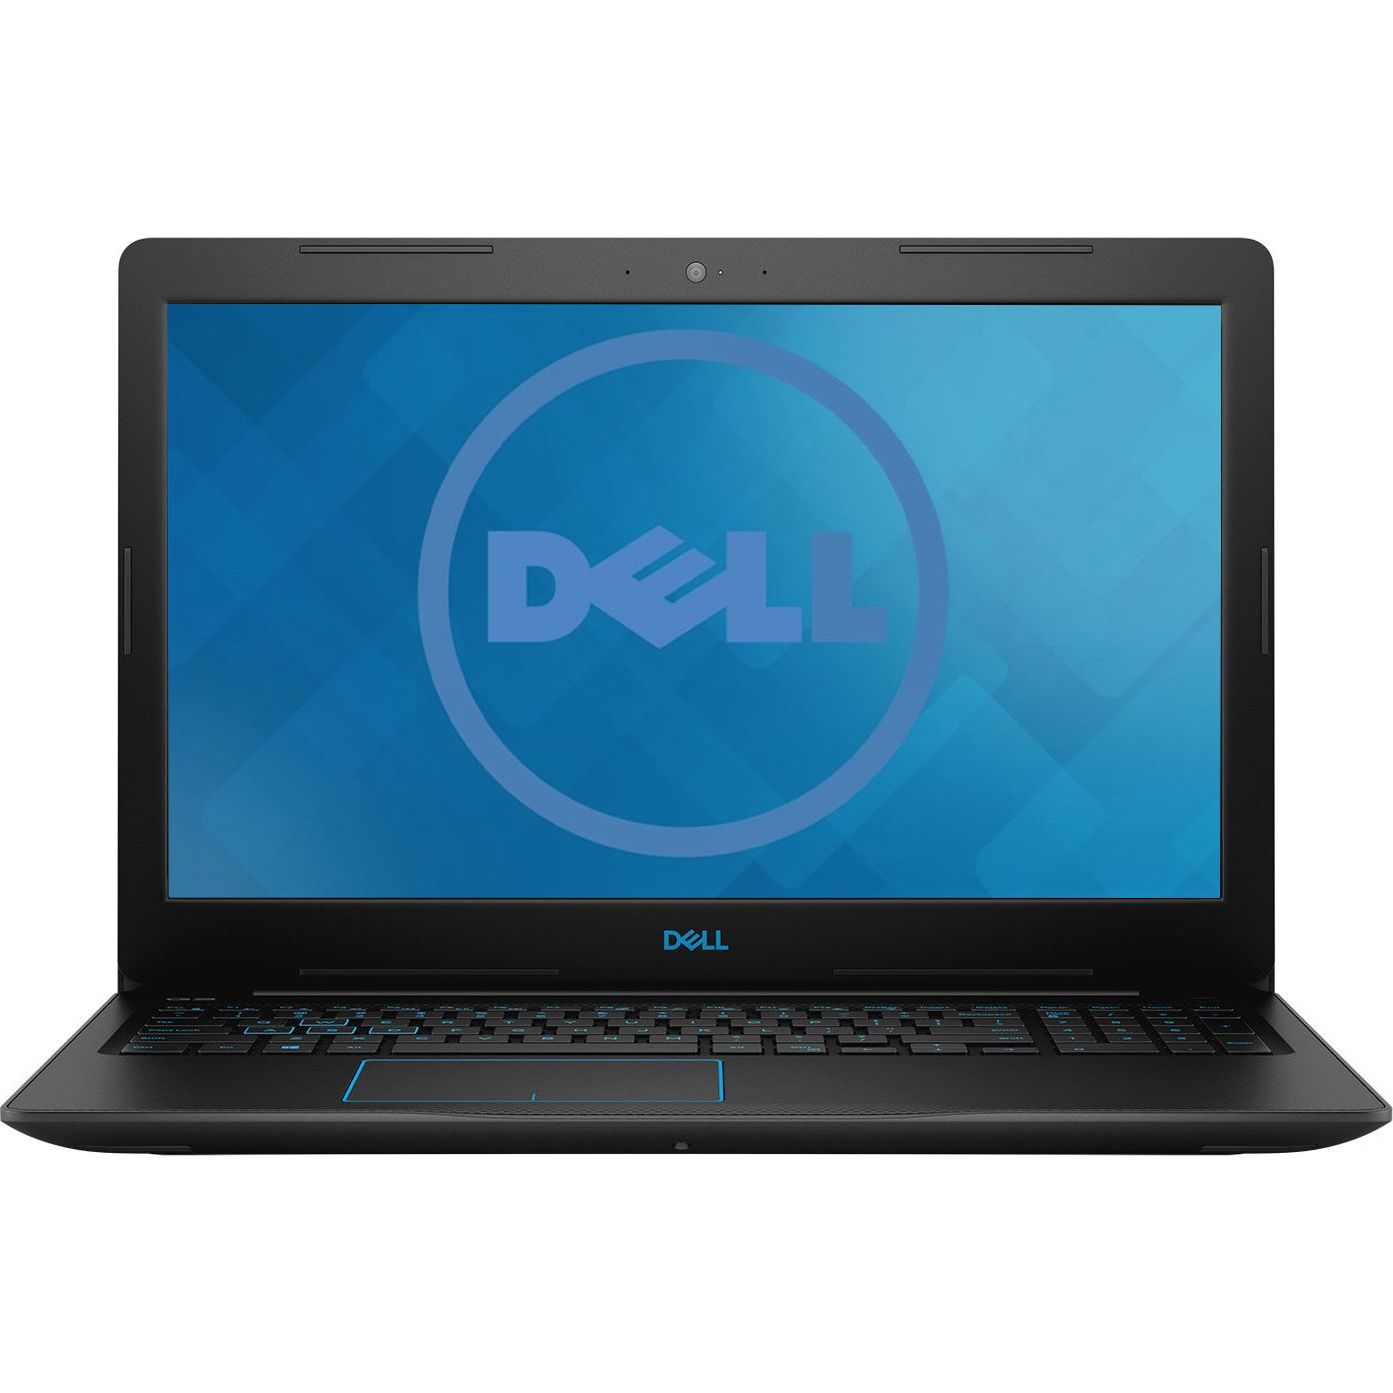 Notebook Dell G3 3579 15.6 Full HD Intel Core i5-8300H GTX 1050-4GB RAM 8GB SSHD 1TB + 8GB Windows 10 Home